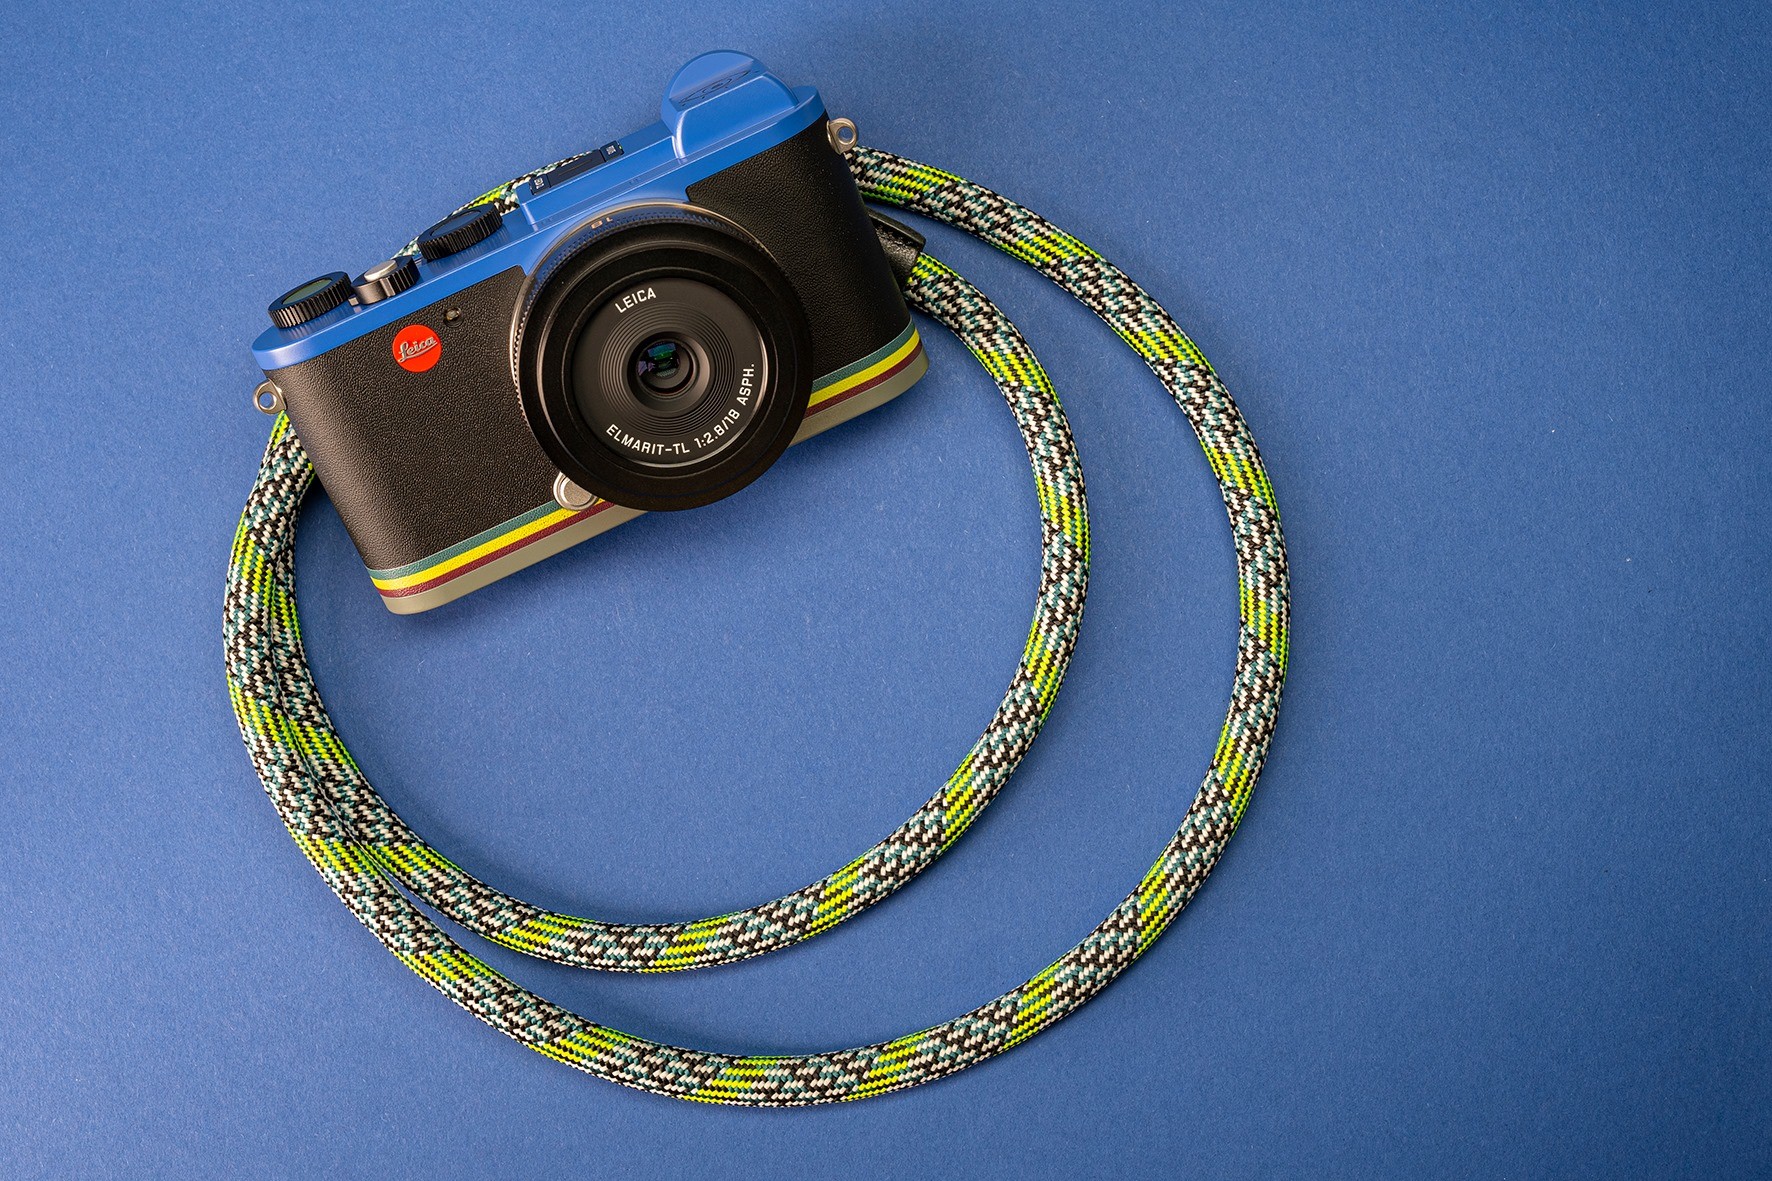 ▲「Leica CL Paul Smith Edition」。（圖／翻攝自Leica Camera FB、Paul Smith官網）